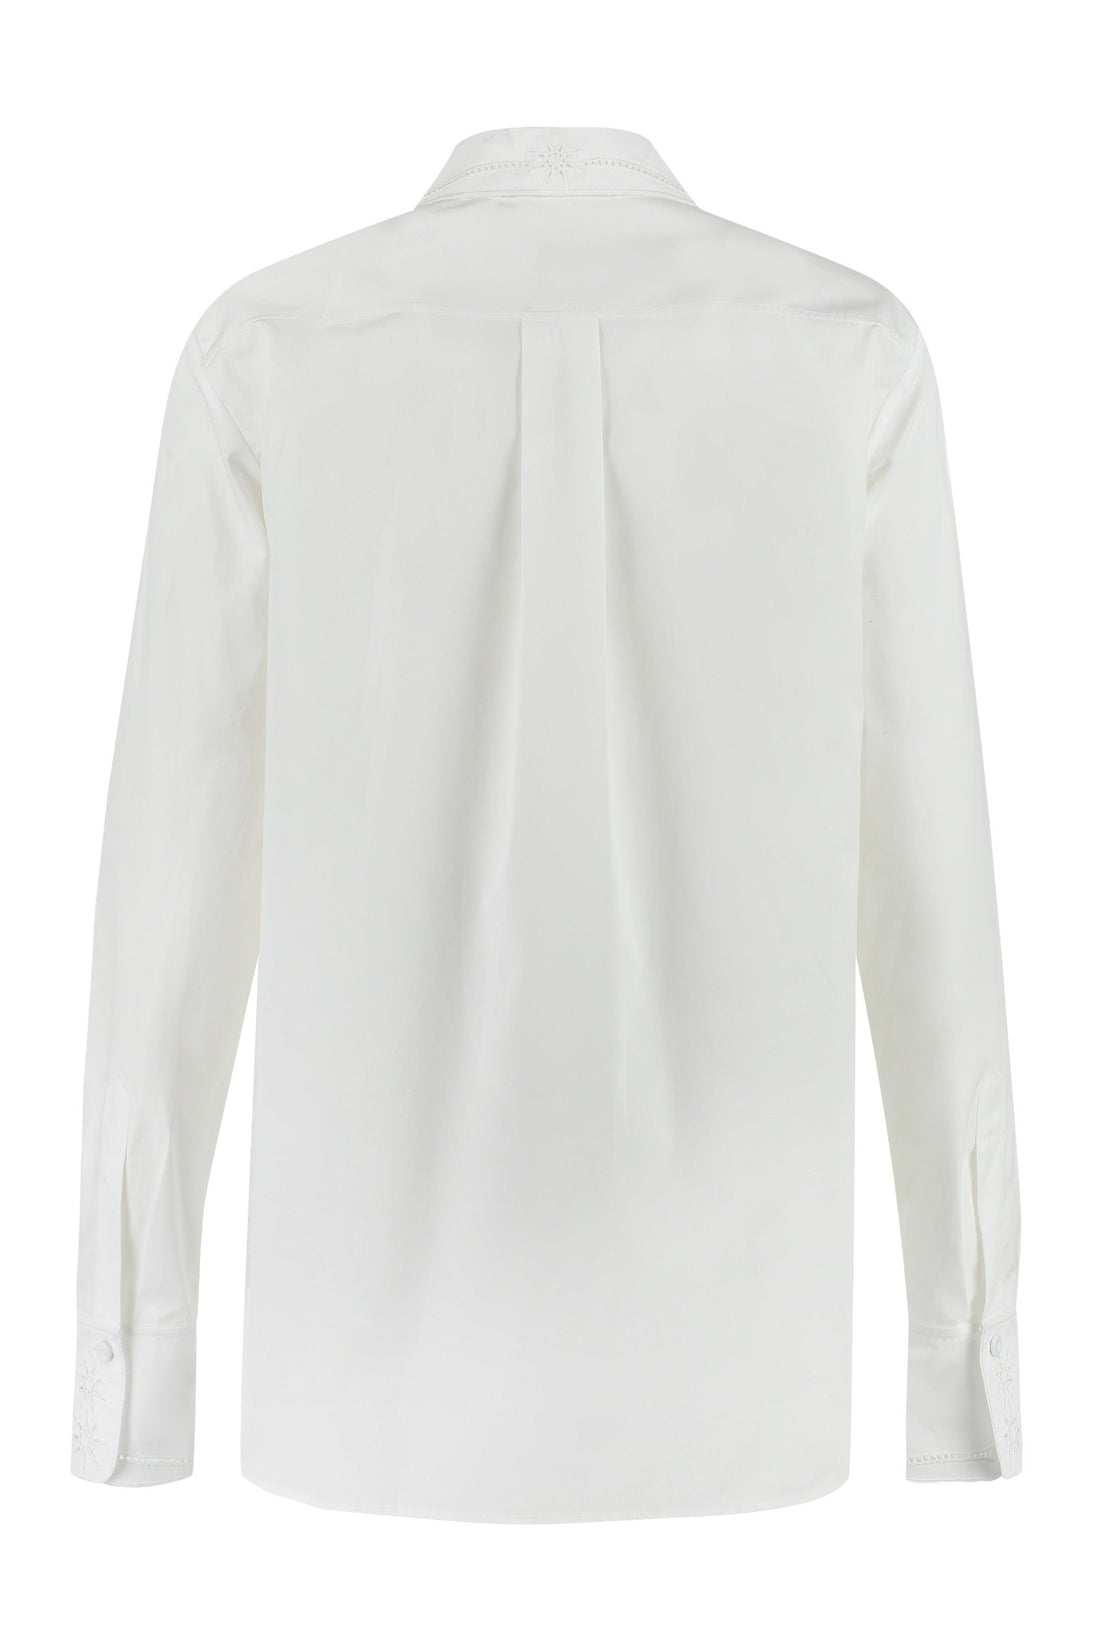 Chloé-OUTLET-SALE-Cotton poplin shirt-ARCHIVIST